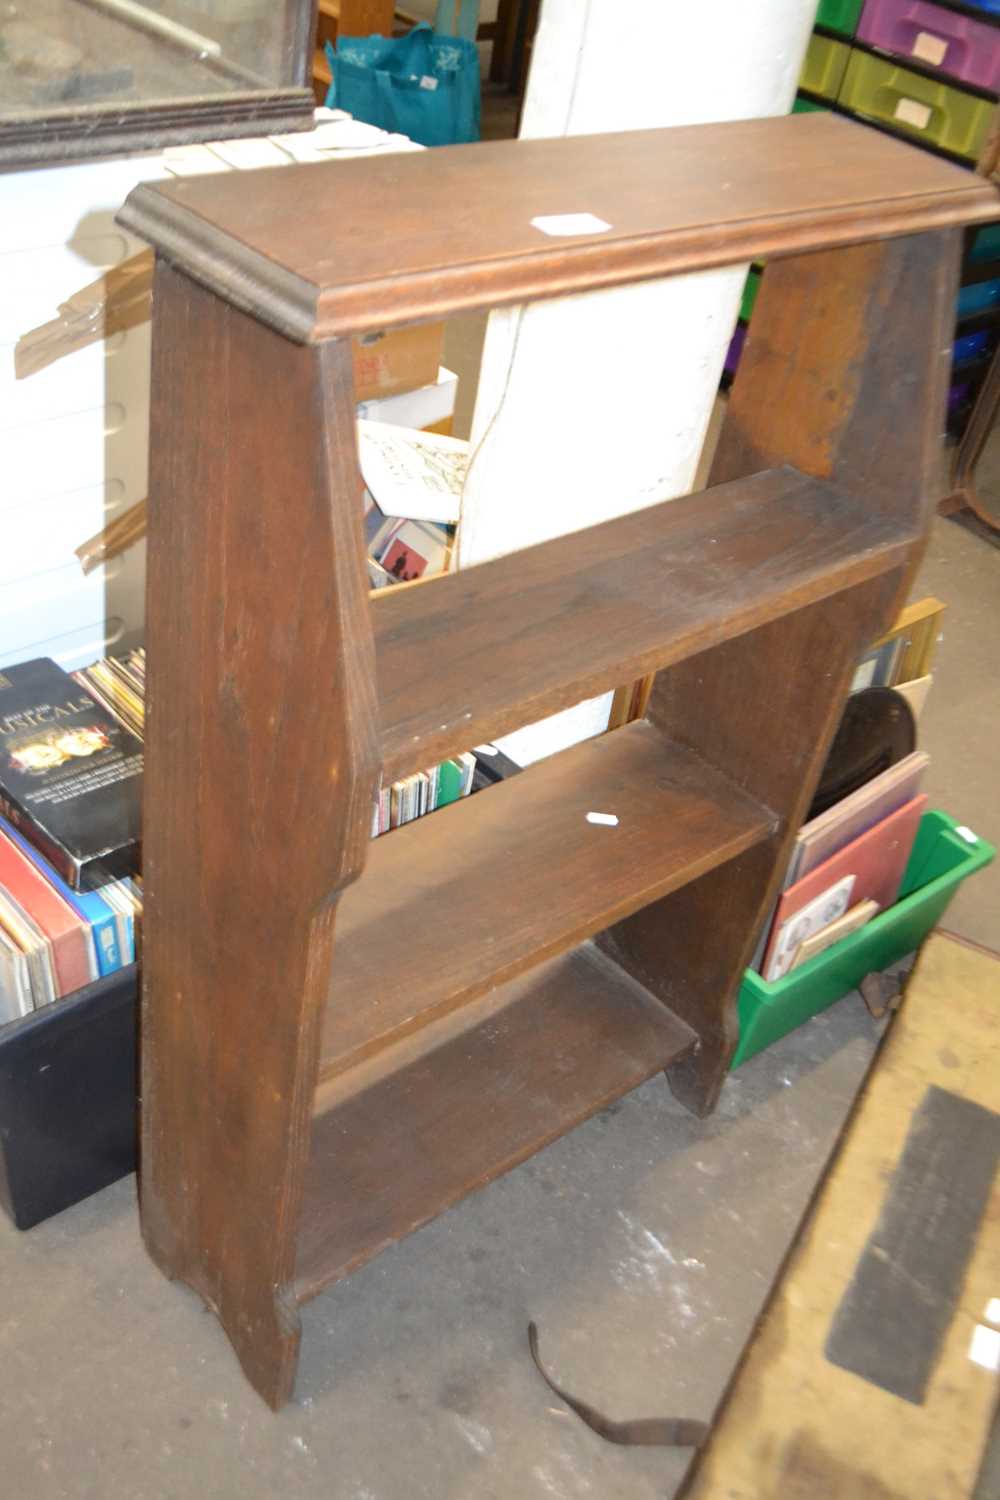 A small wooden bookshelf, 62cm wide